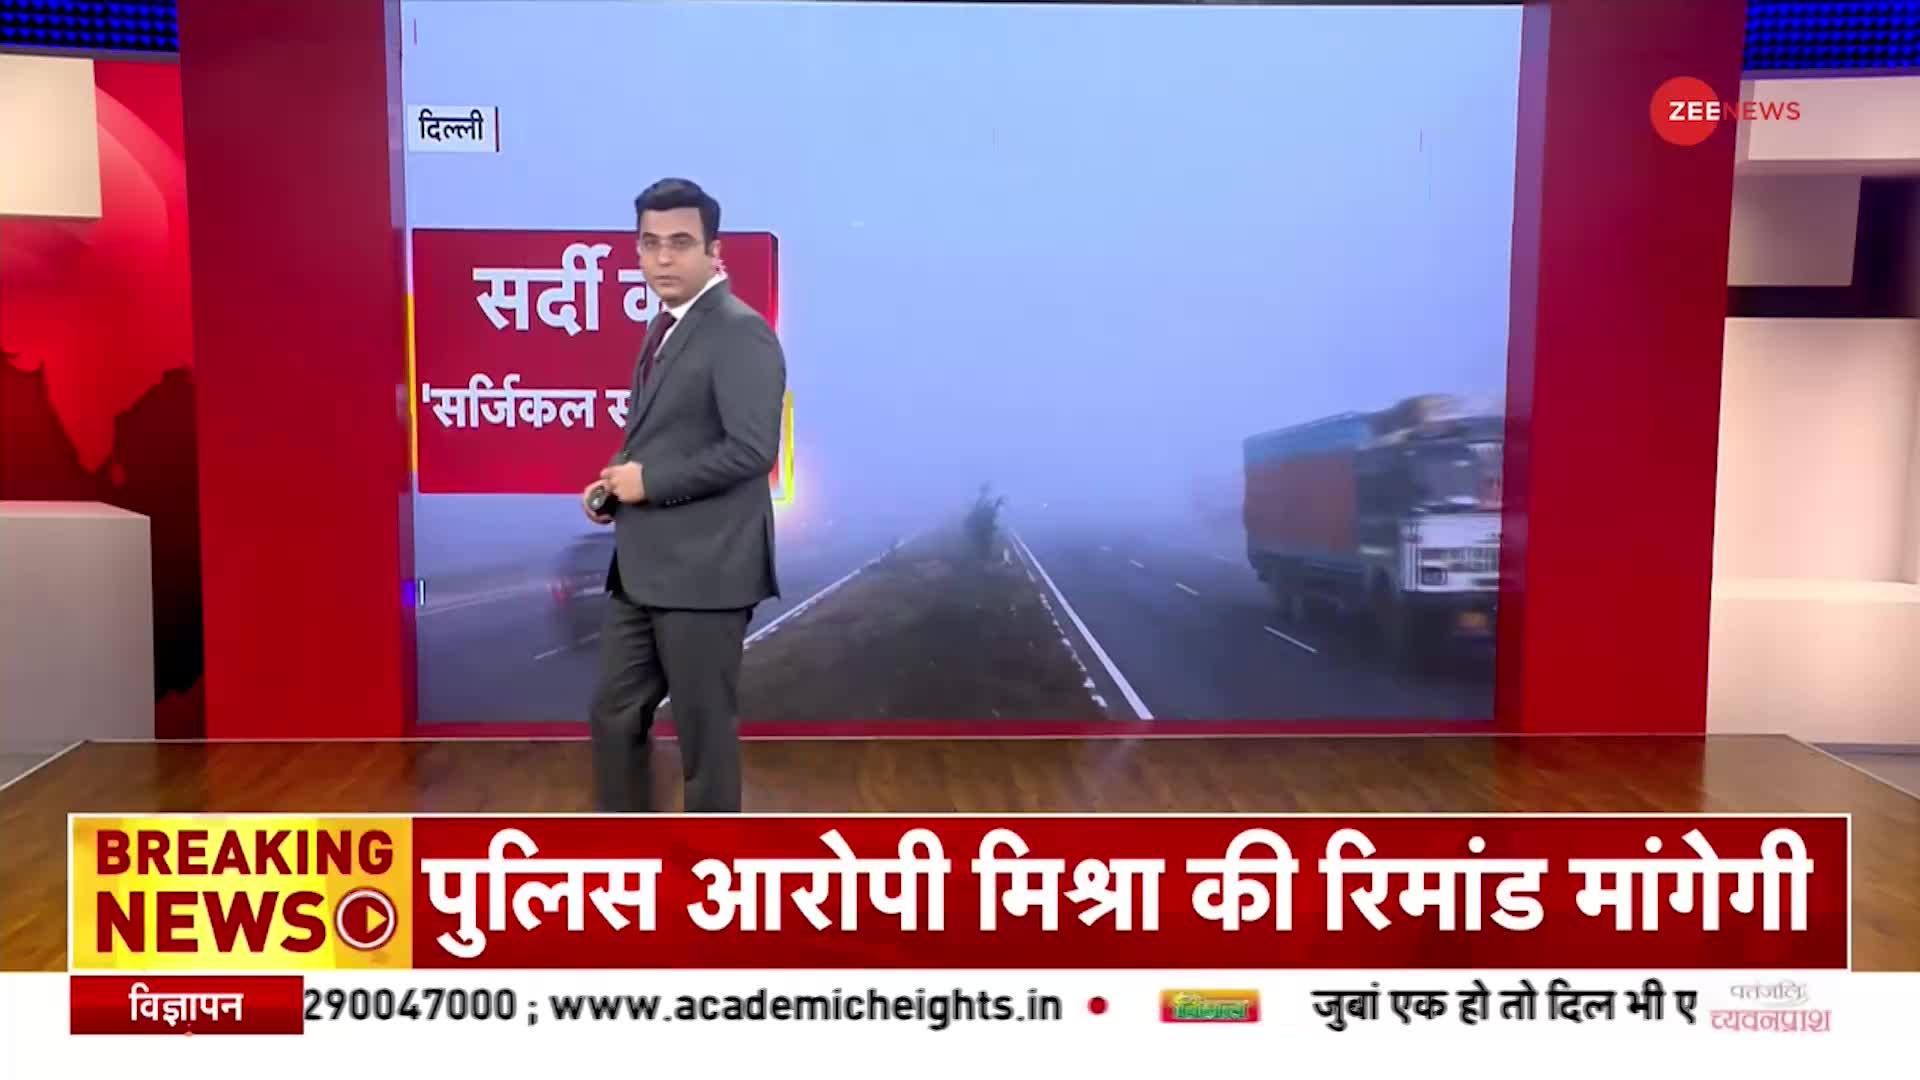 Delhi Weather: दिल्ली समेत उत्तर भारत में शीतलहर का प्रकोप, घने कोहरे से बढ़ी परेशानी